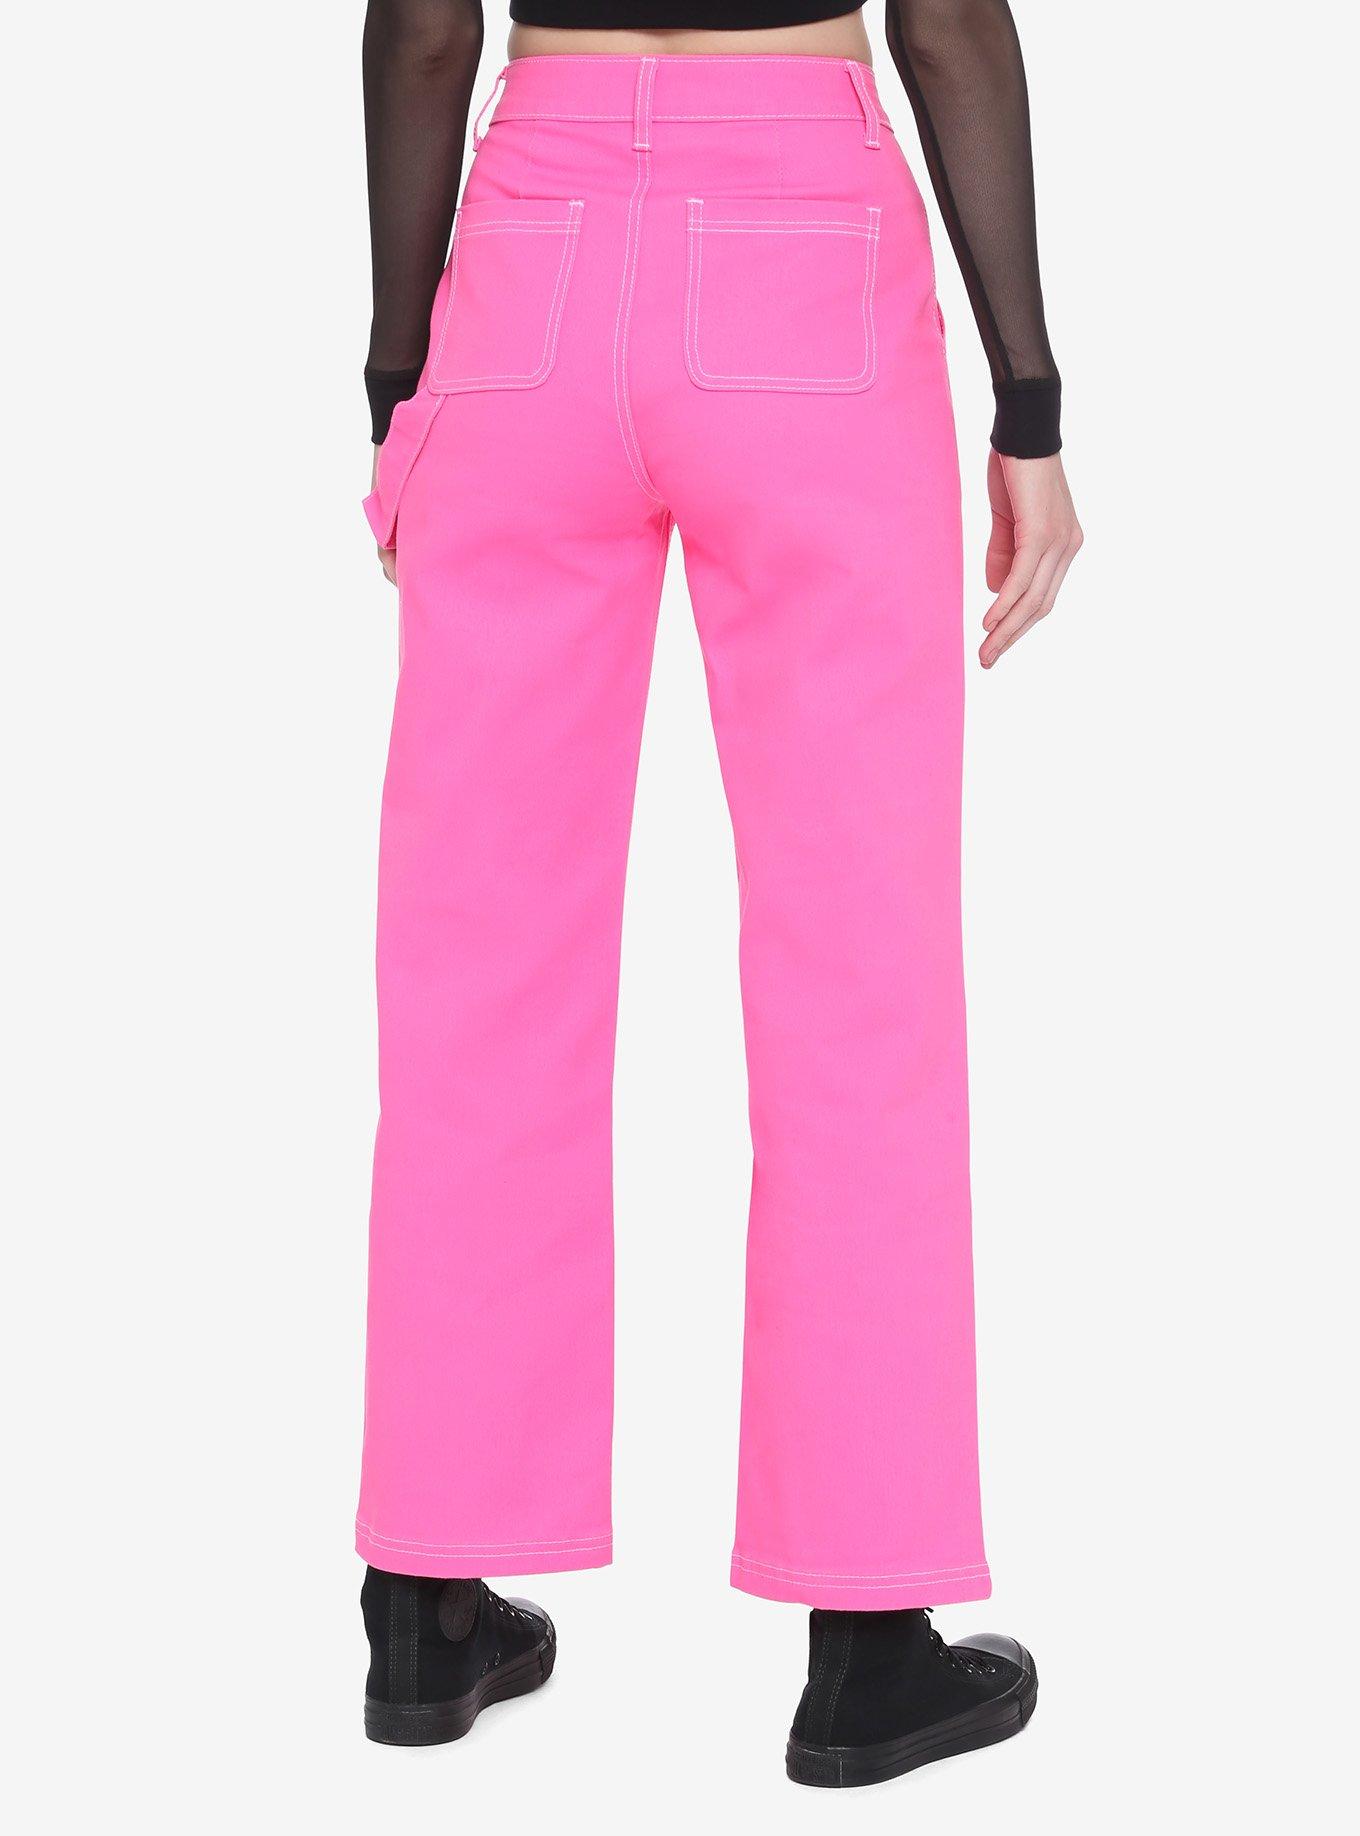 Neon Pink Strap Carpenter Pants, PINK, alternate